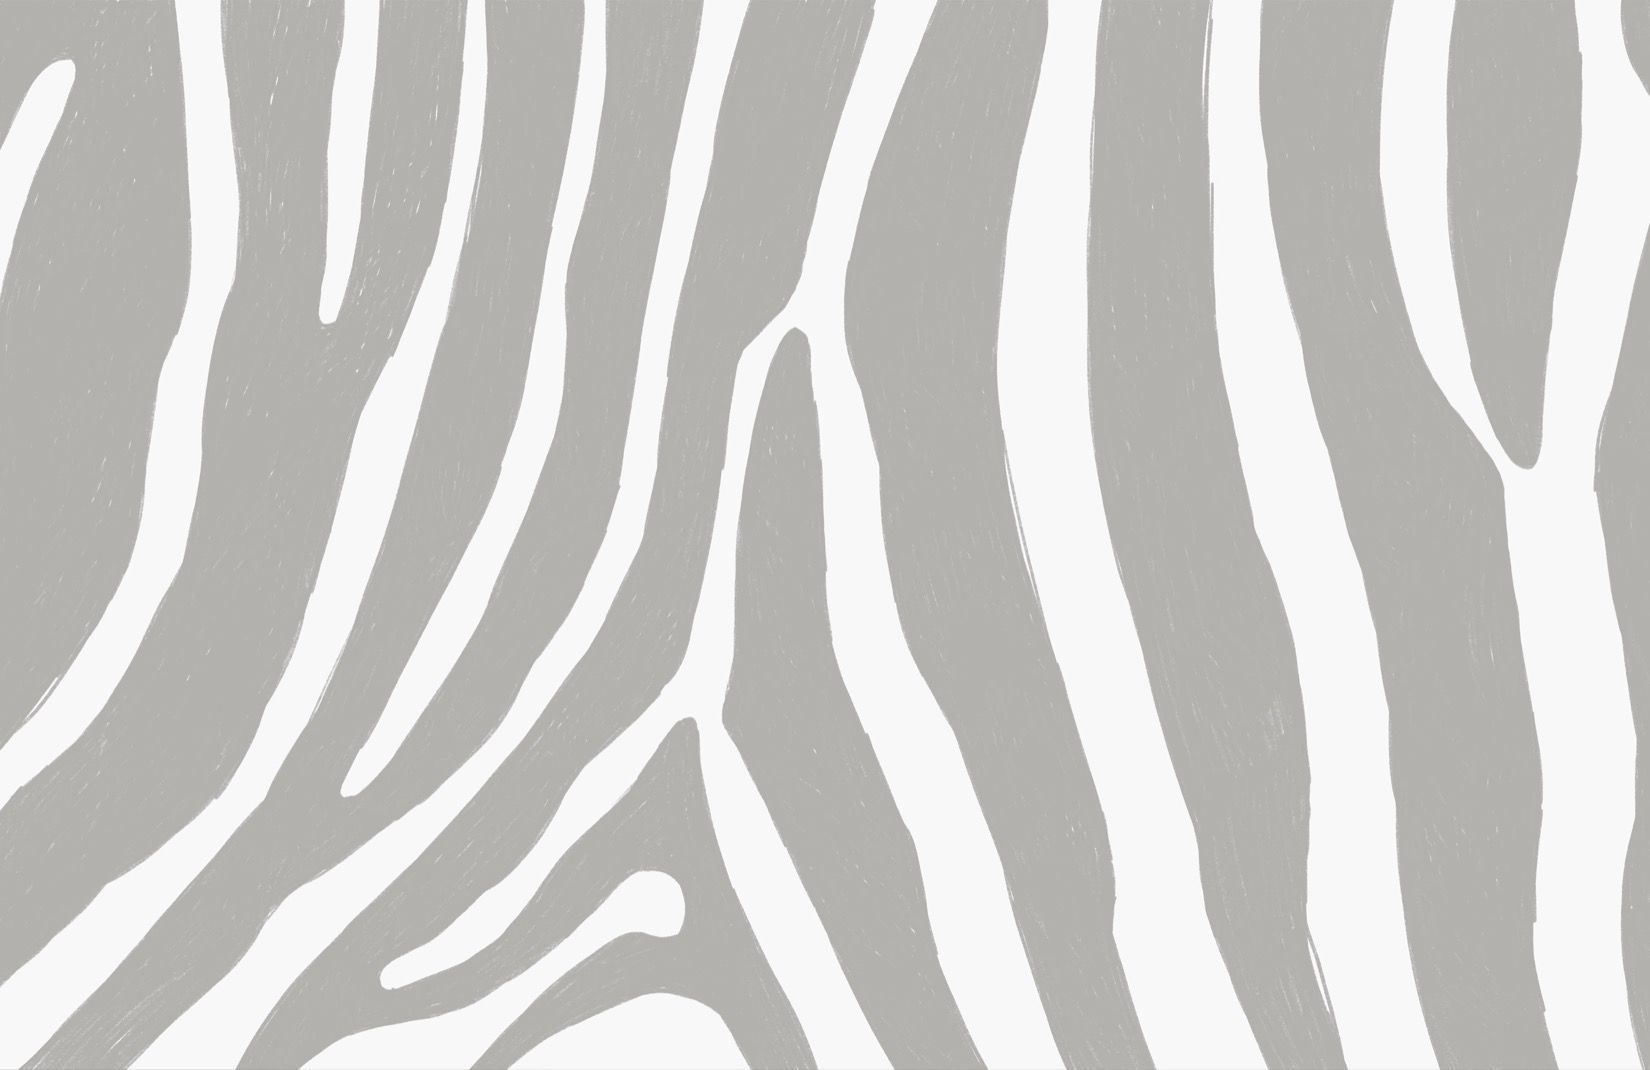 Grey Zebra Print Wallpaper Mural. MuralsWallpaper. Animal print wallpaper, Zebra print wallpaper, Zebra wallpaper